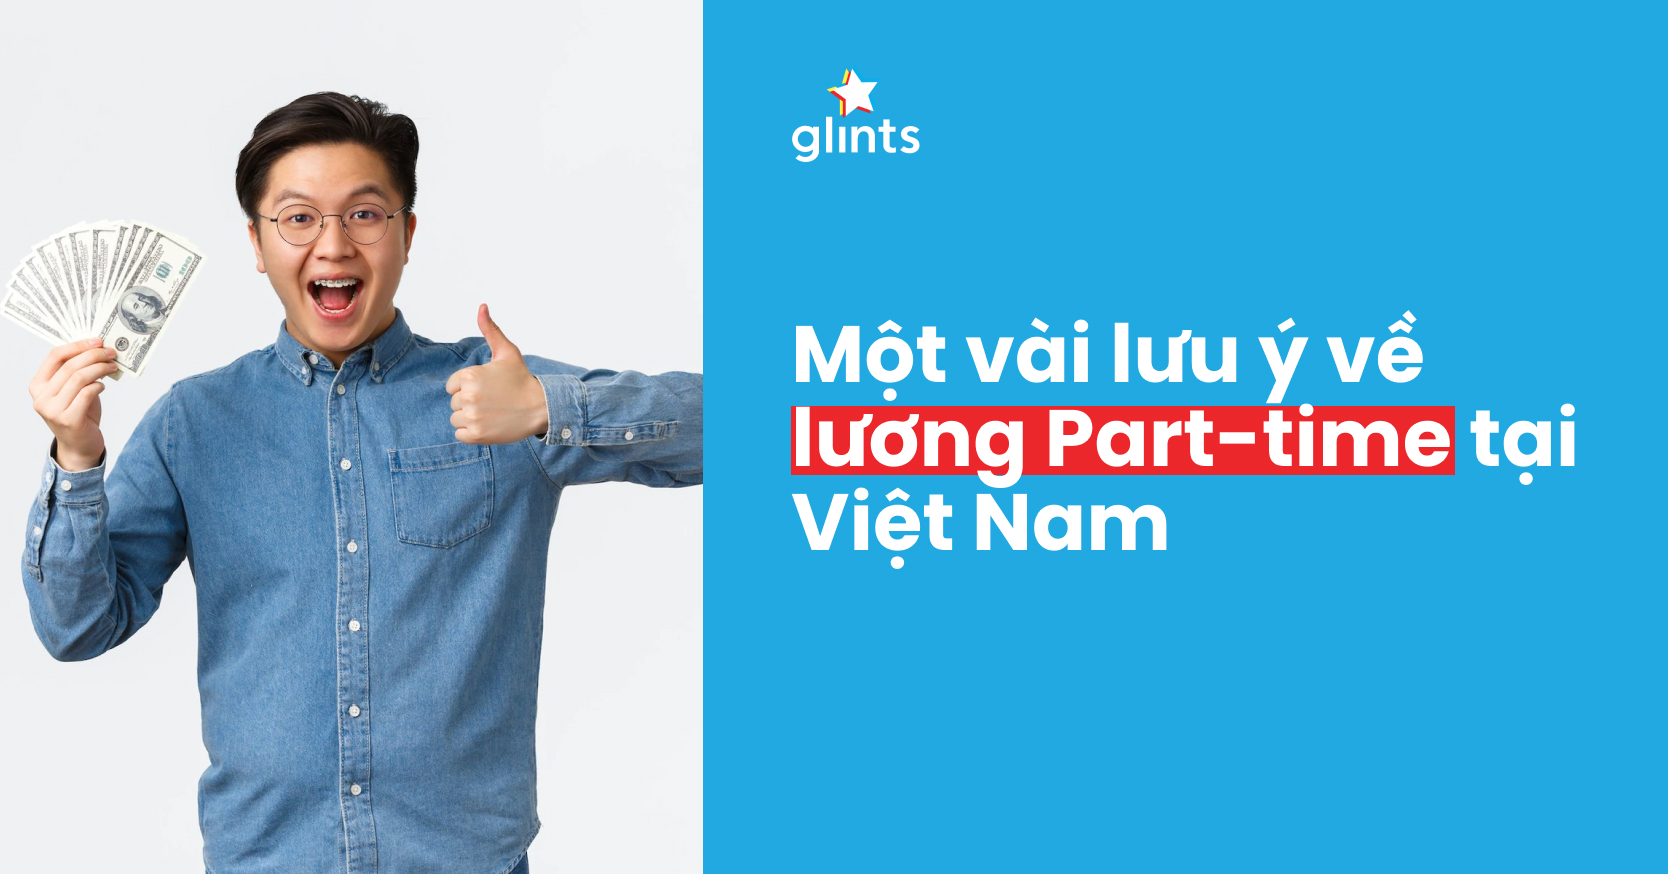 Lương Part Time Tại Việt Nam Và Một Vài Lưu Ý Dành Cho Các Bạn Sinh Viên